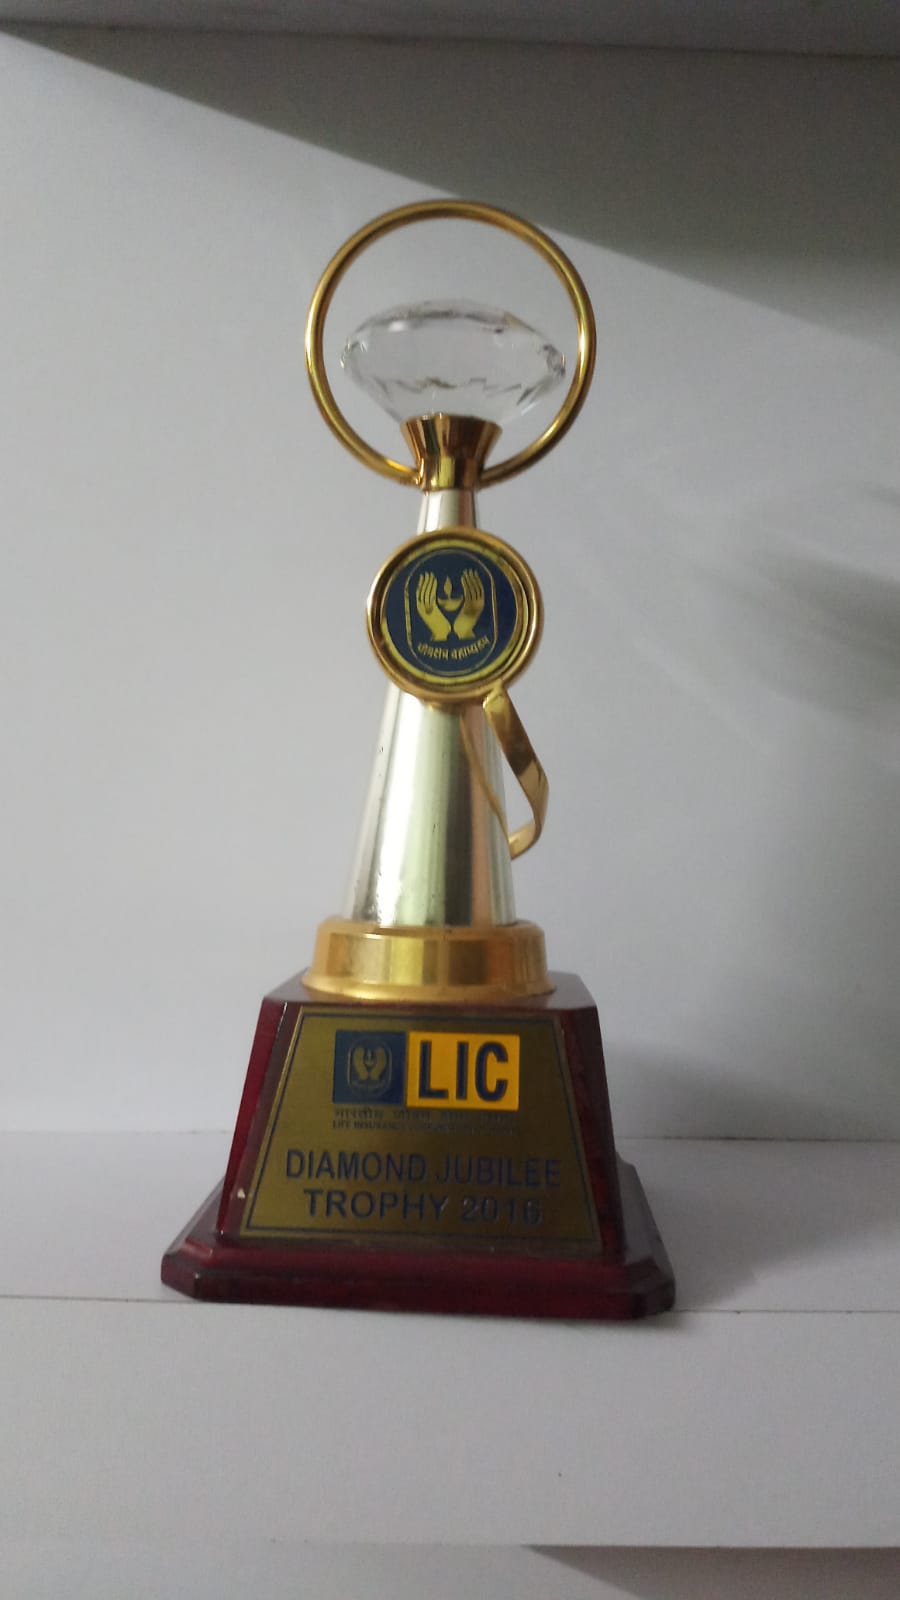 Diamond jumble Trophy 2016